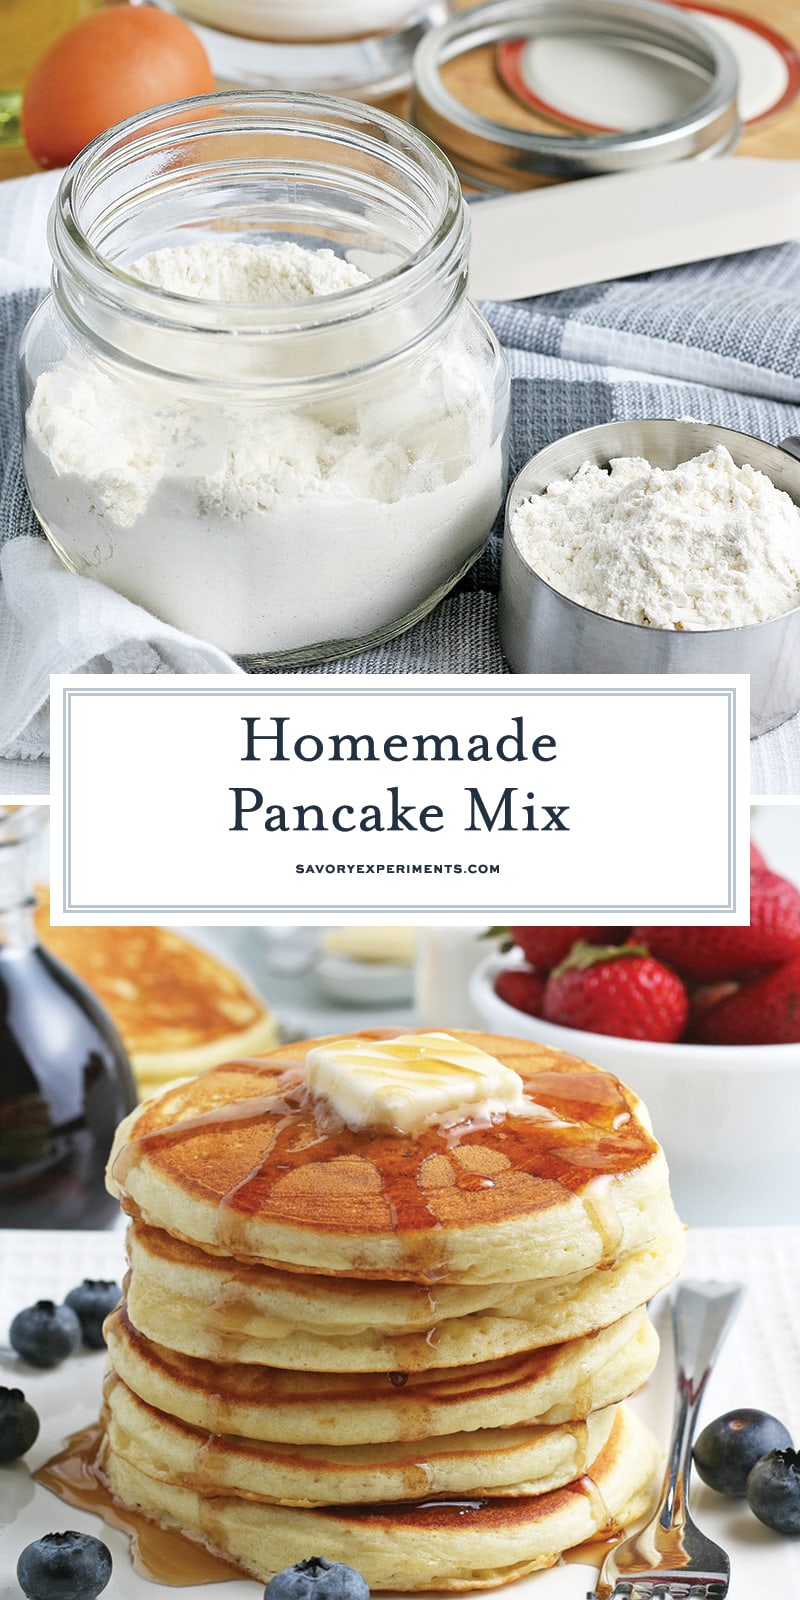 Homemade Pancake Mix - DIY Pancake Mix in 3 Minutes!